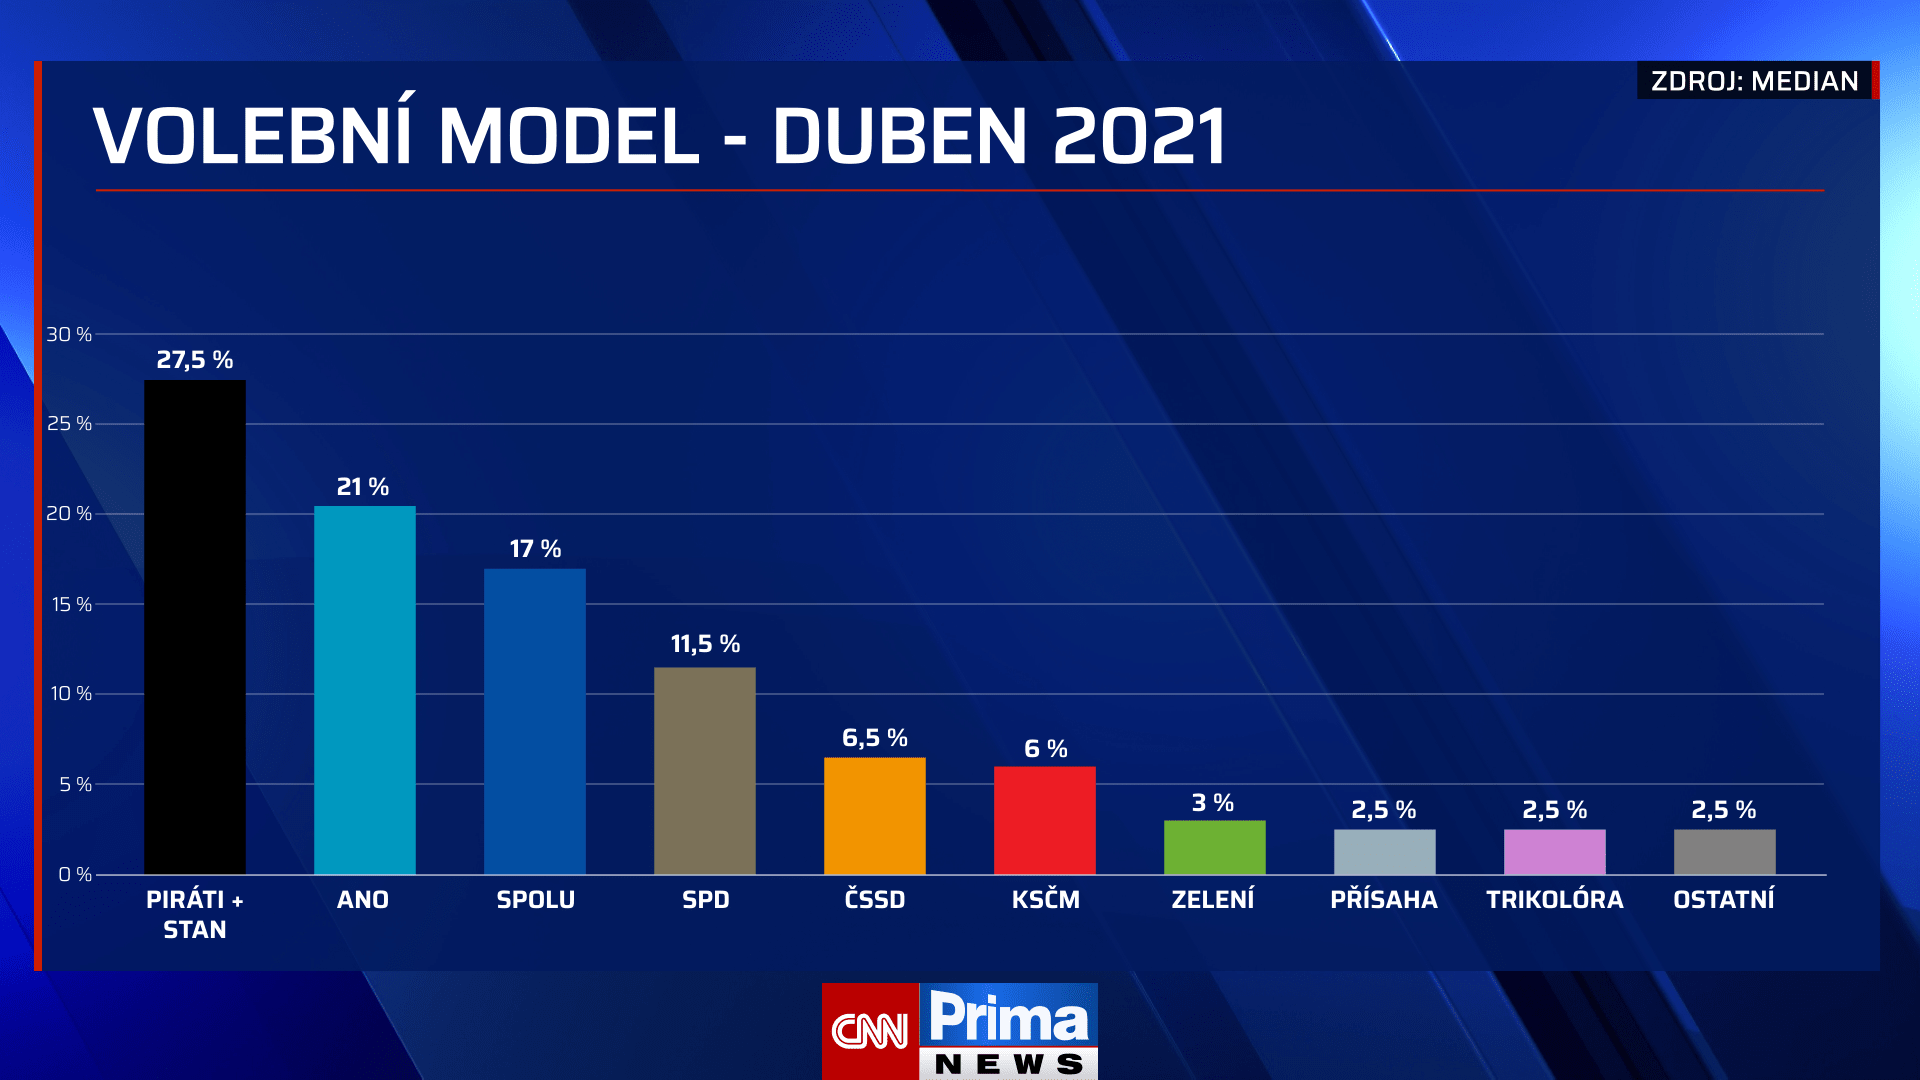 Volební model Medianu, duben 2021